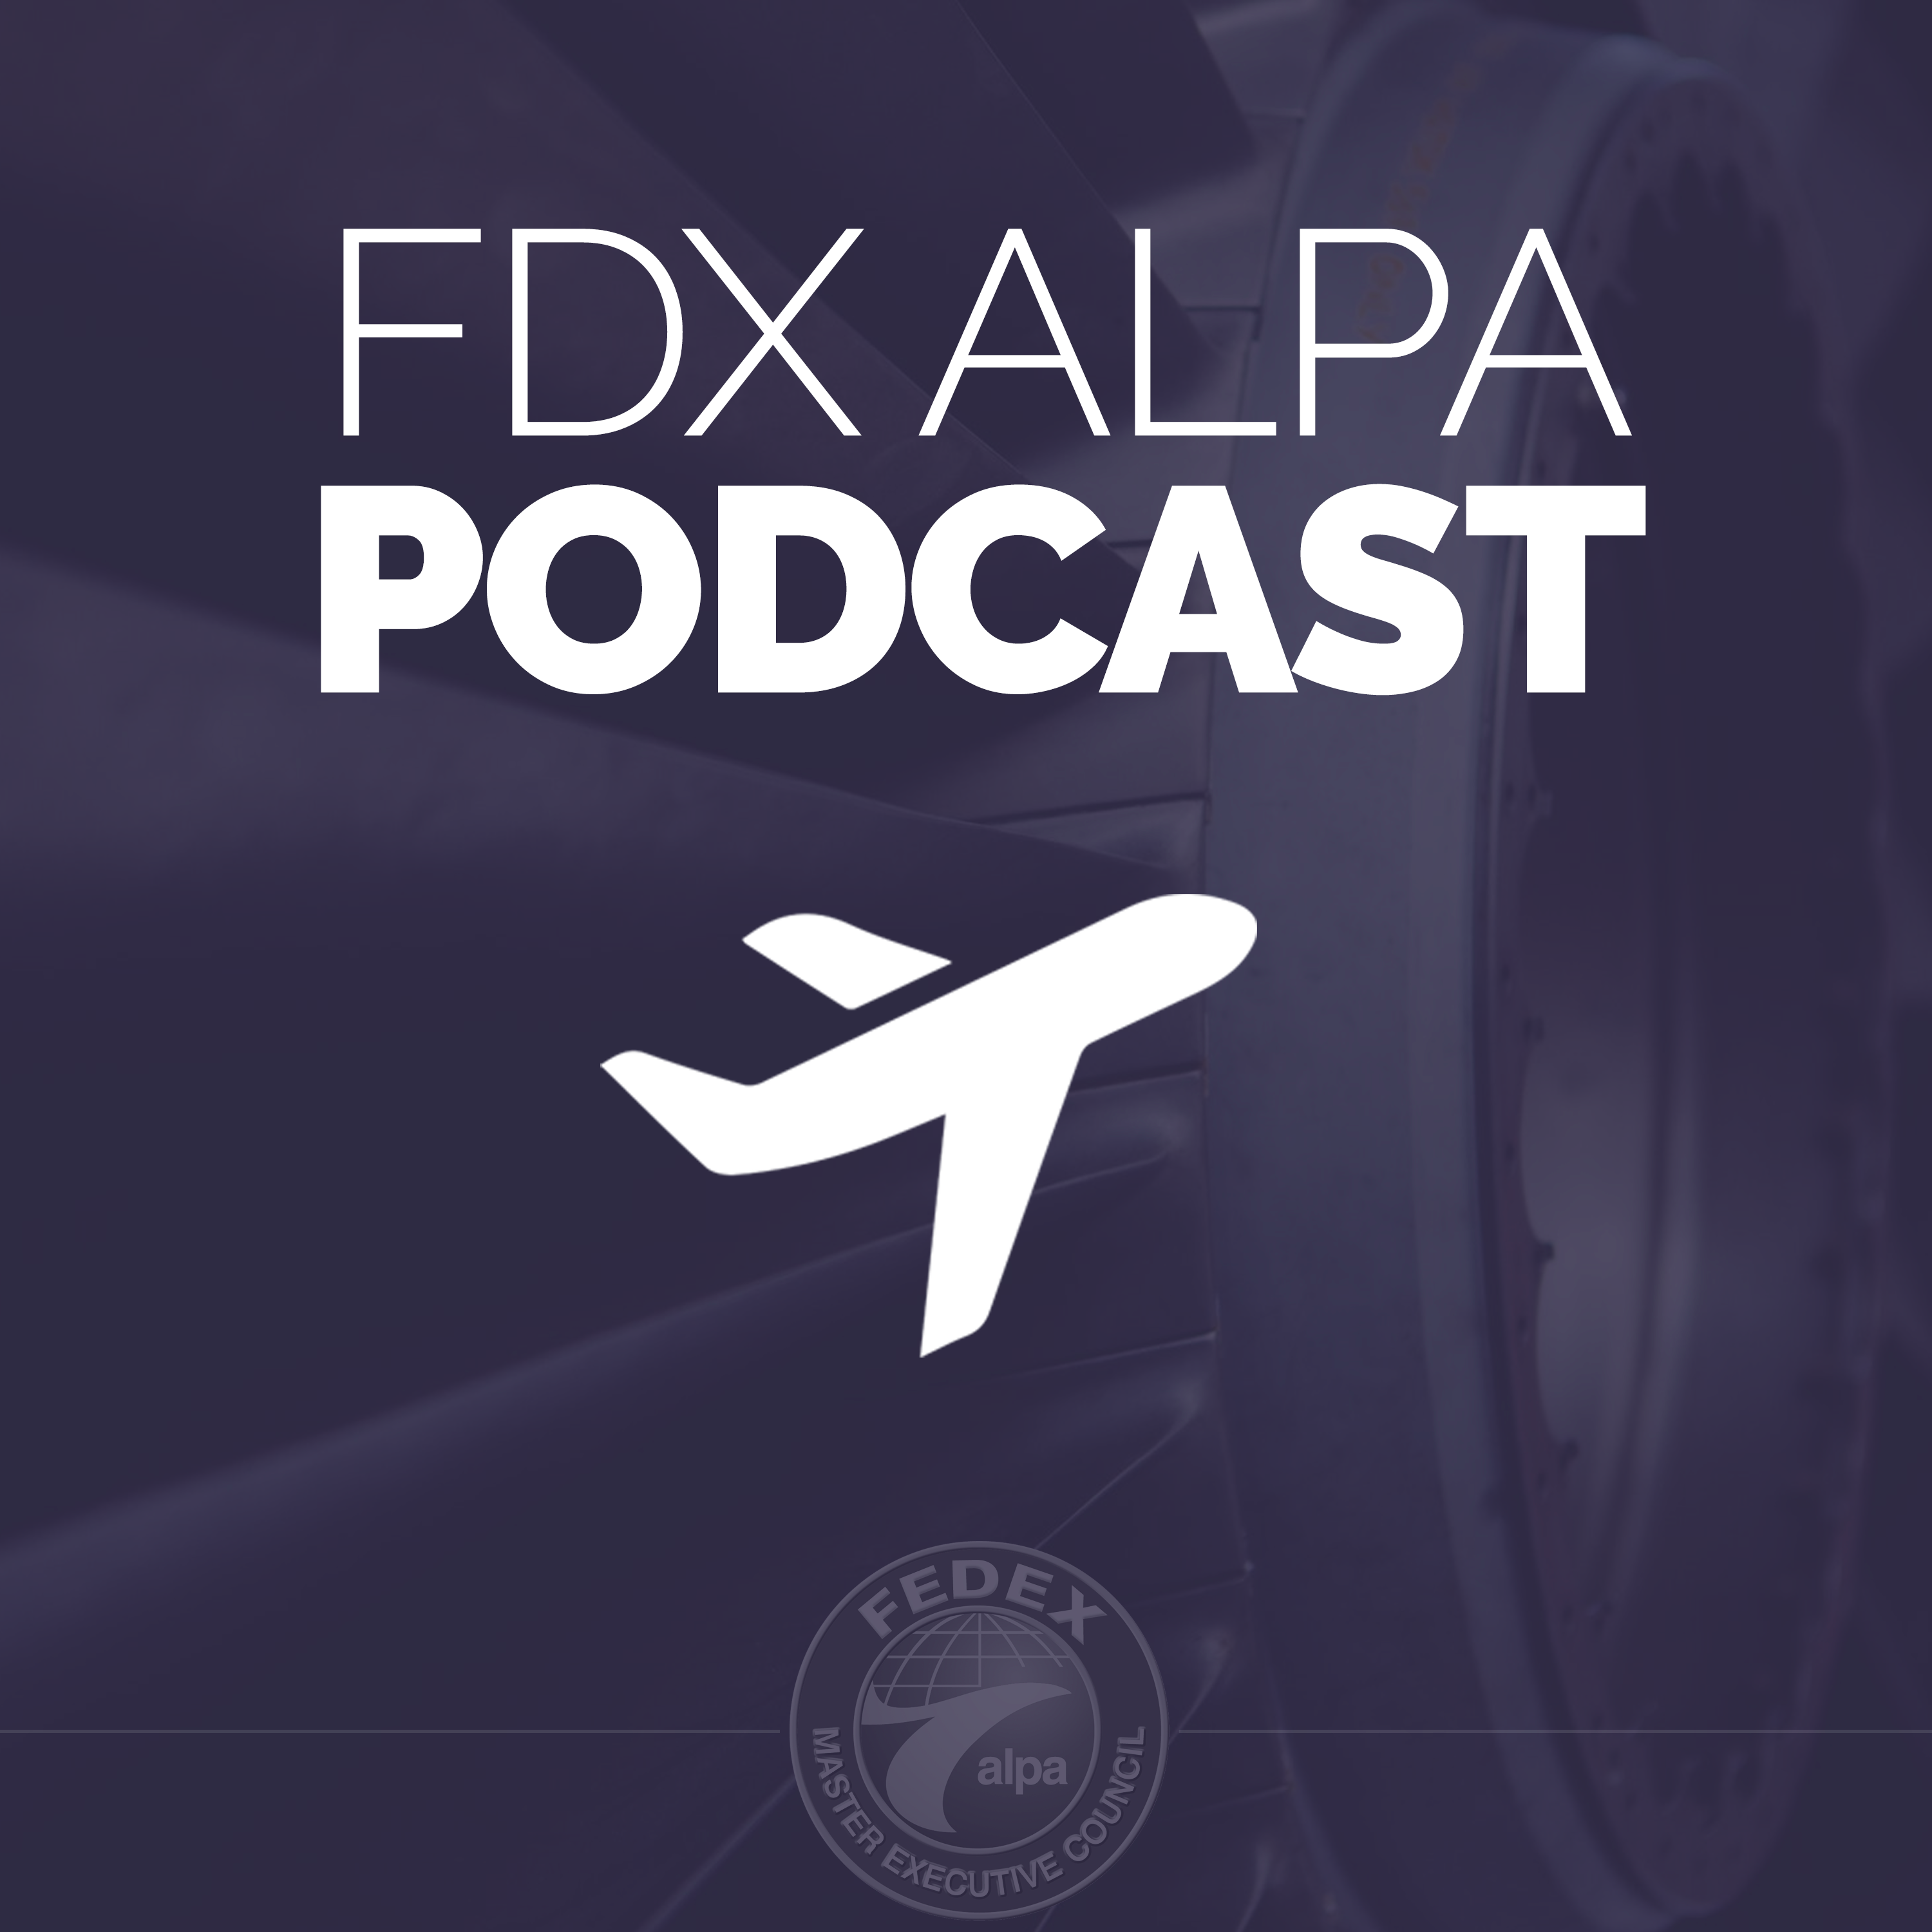 FDX ALPA Podcast